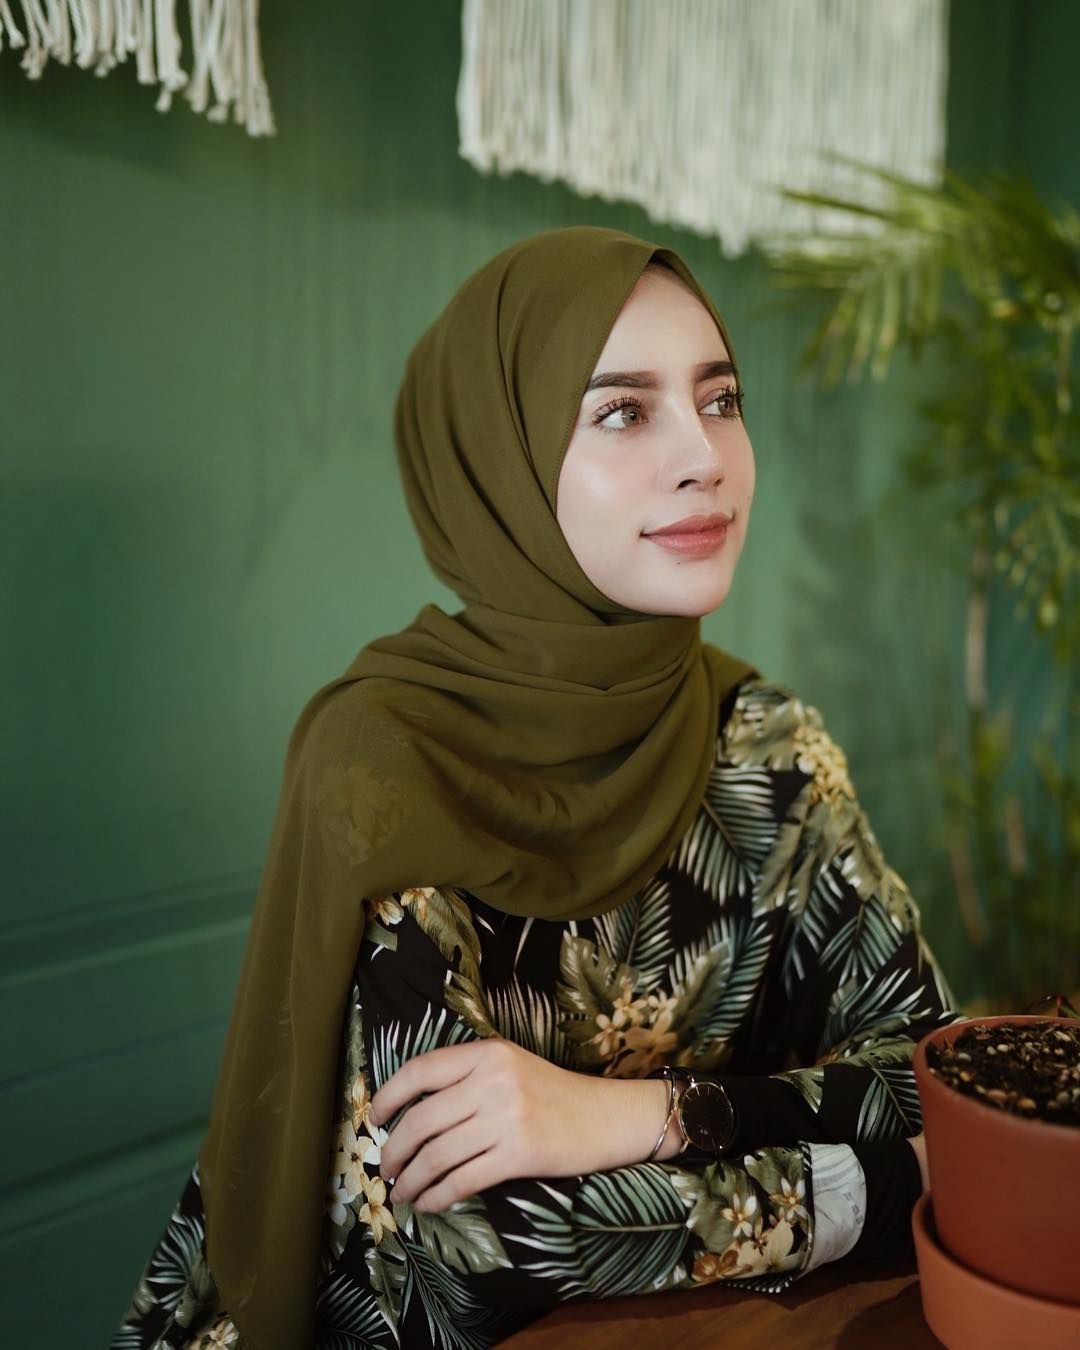 5 Cara Pakai Hijab Pashmina Simple yang Mudah Ditiru untuk Sehari-hari